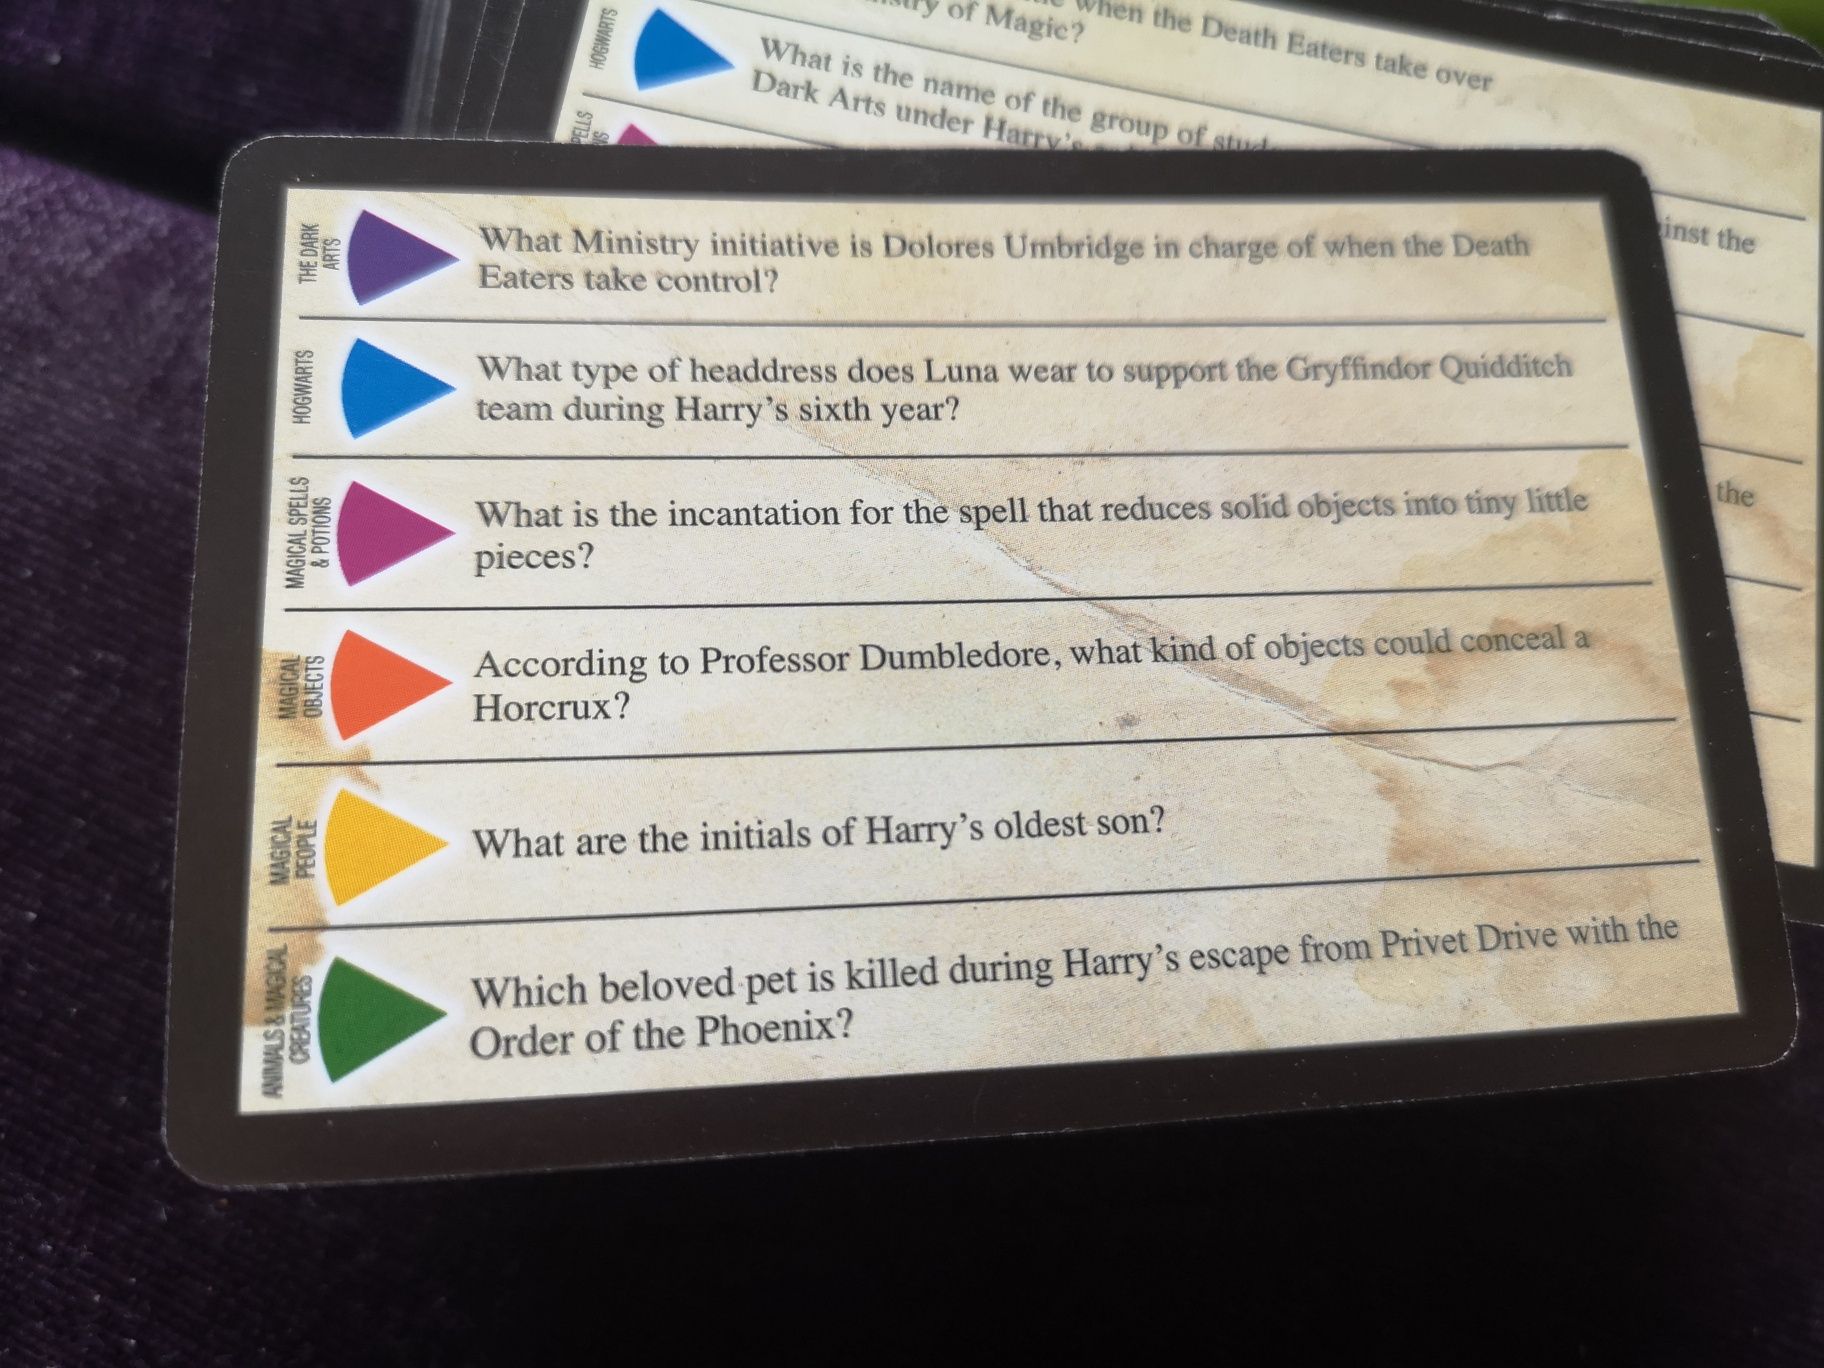 Harry Potter trivia pursuit gra po angielsku